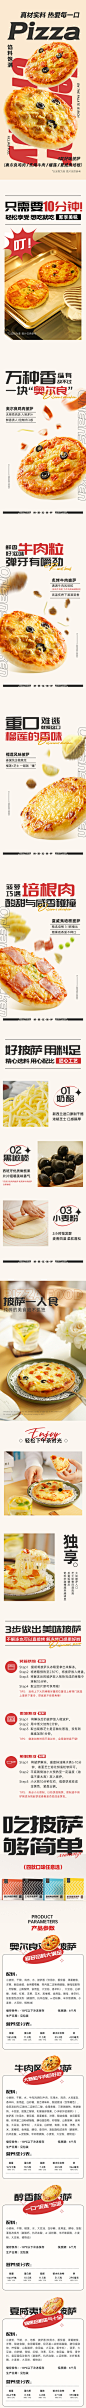 ◉◉ 微信公众号：xinwei-1991】整理分享 @辛未设计 ⇦了解更多 ！美食海报设计餐饮海报设计零食海报设计甜品海报设计日式海报设计中文海报设计  (31).jpg